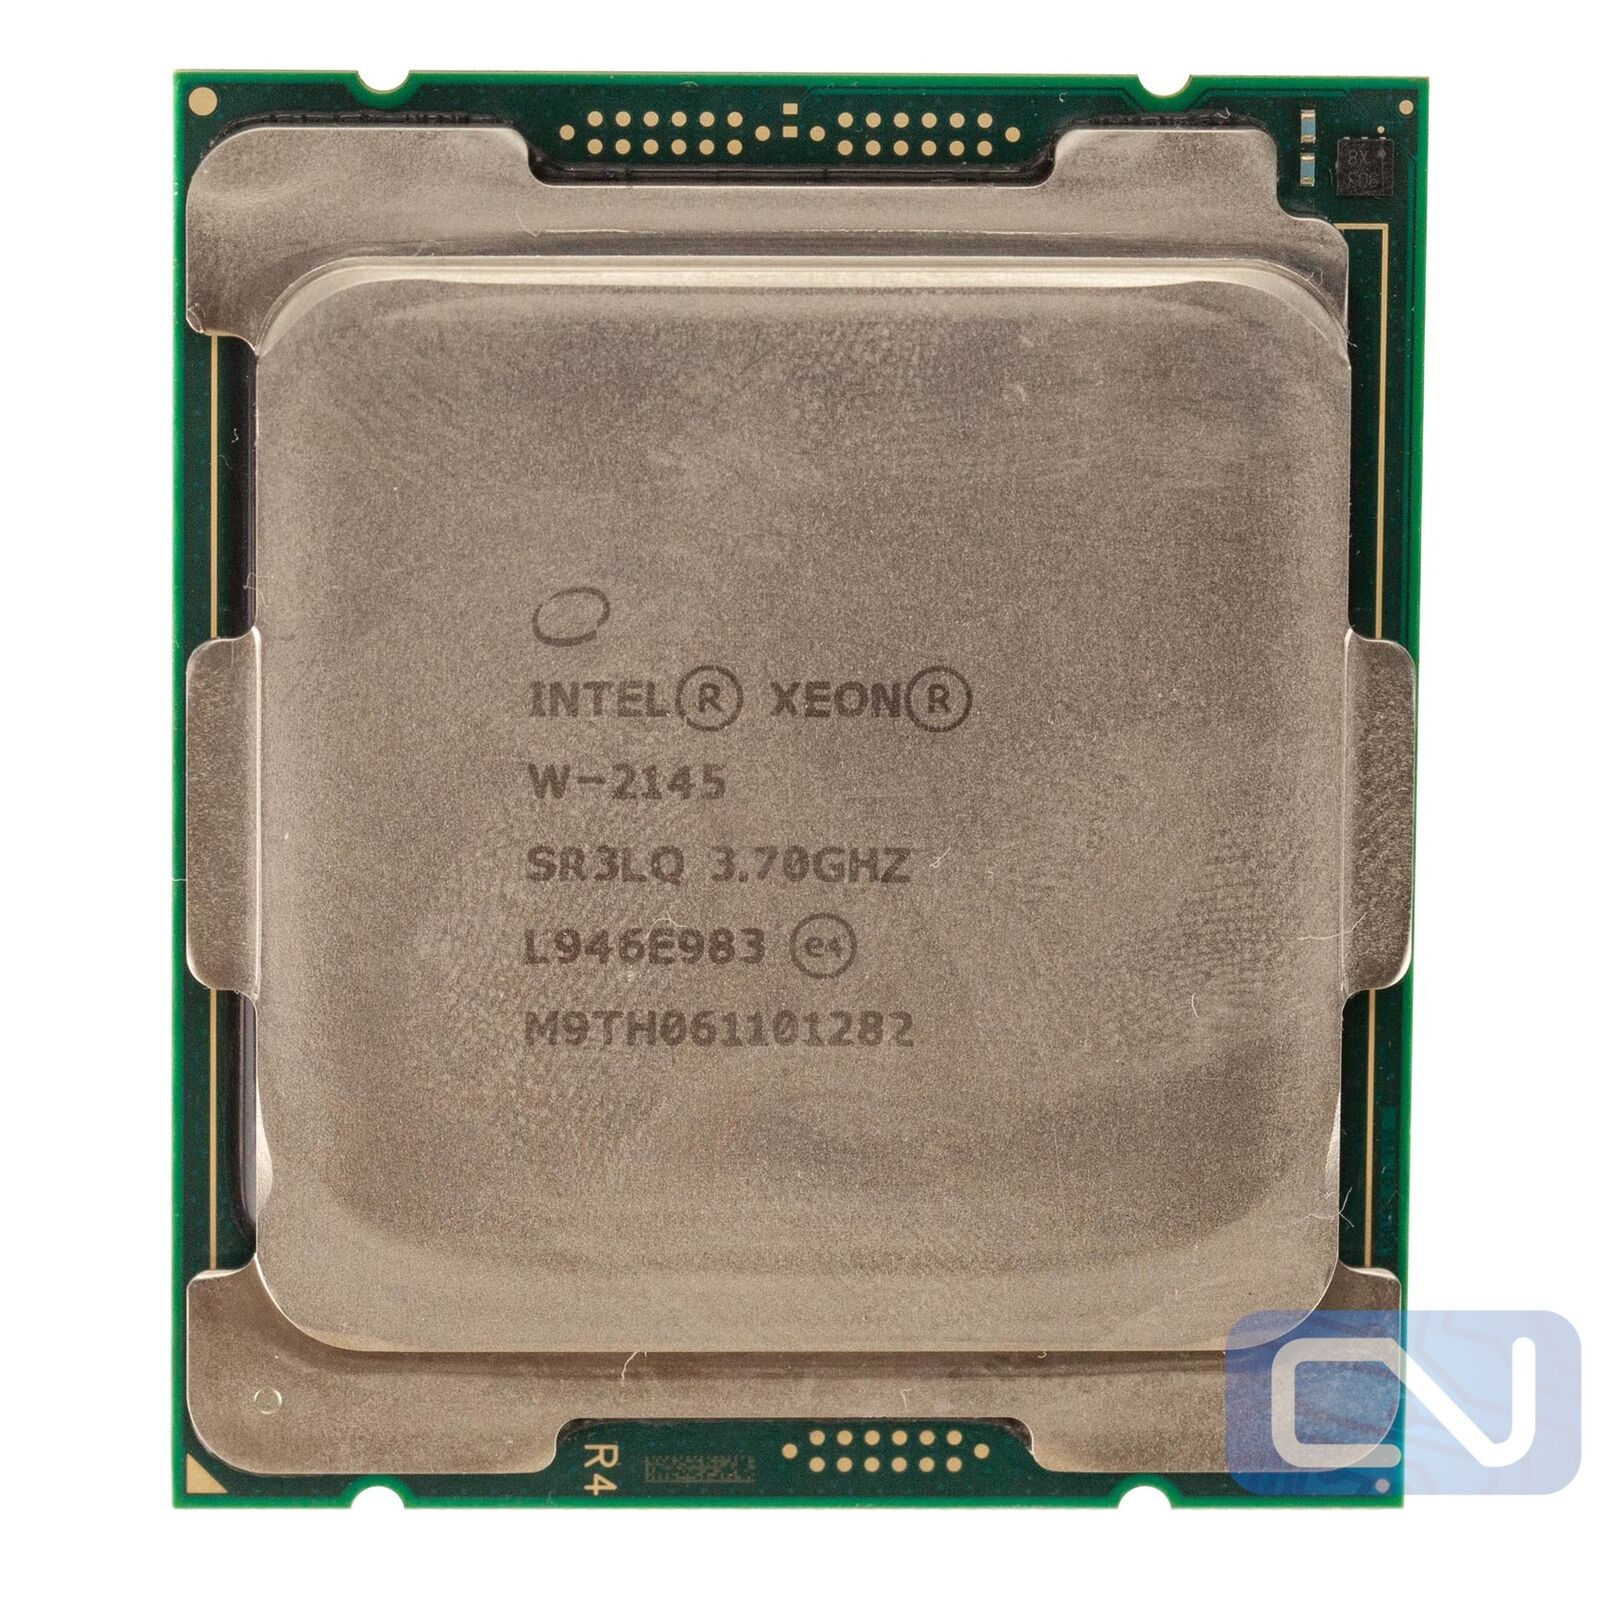 Intel Xeon W-2145 W-Series 3.7GHz 11MB 8 Core SR3LQ LGA2066 Clean Pull Processor